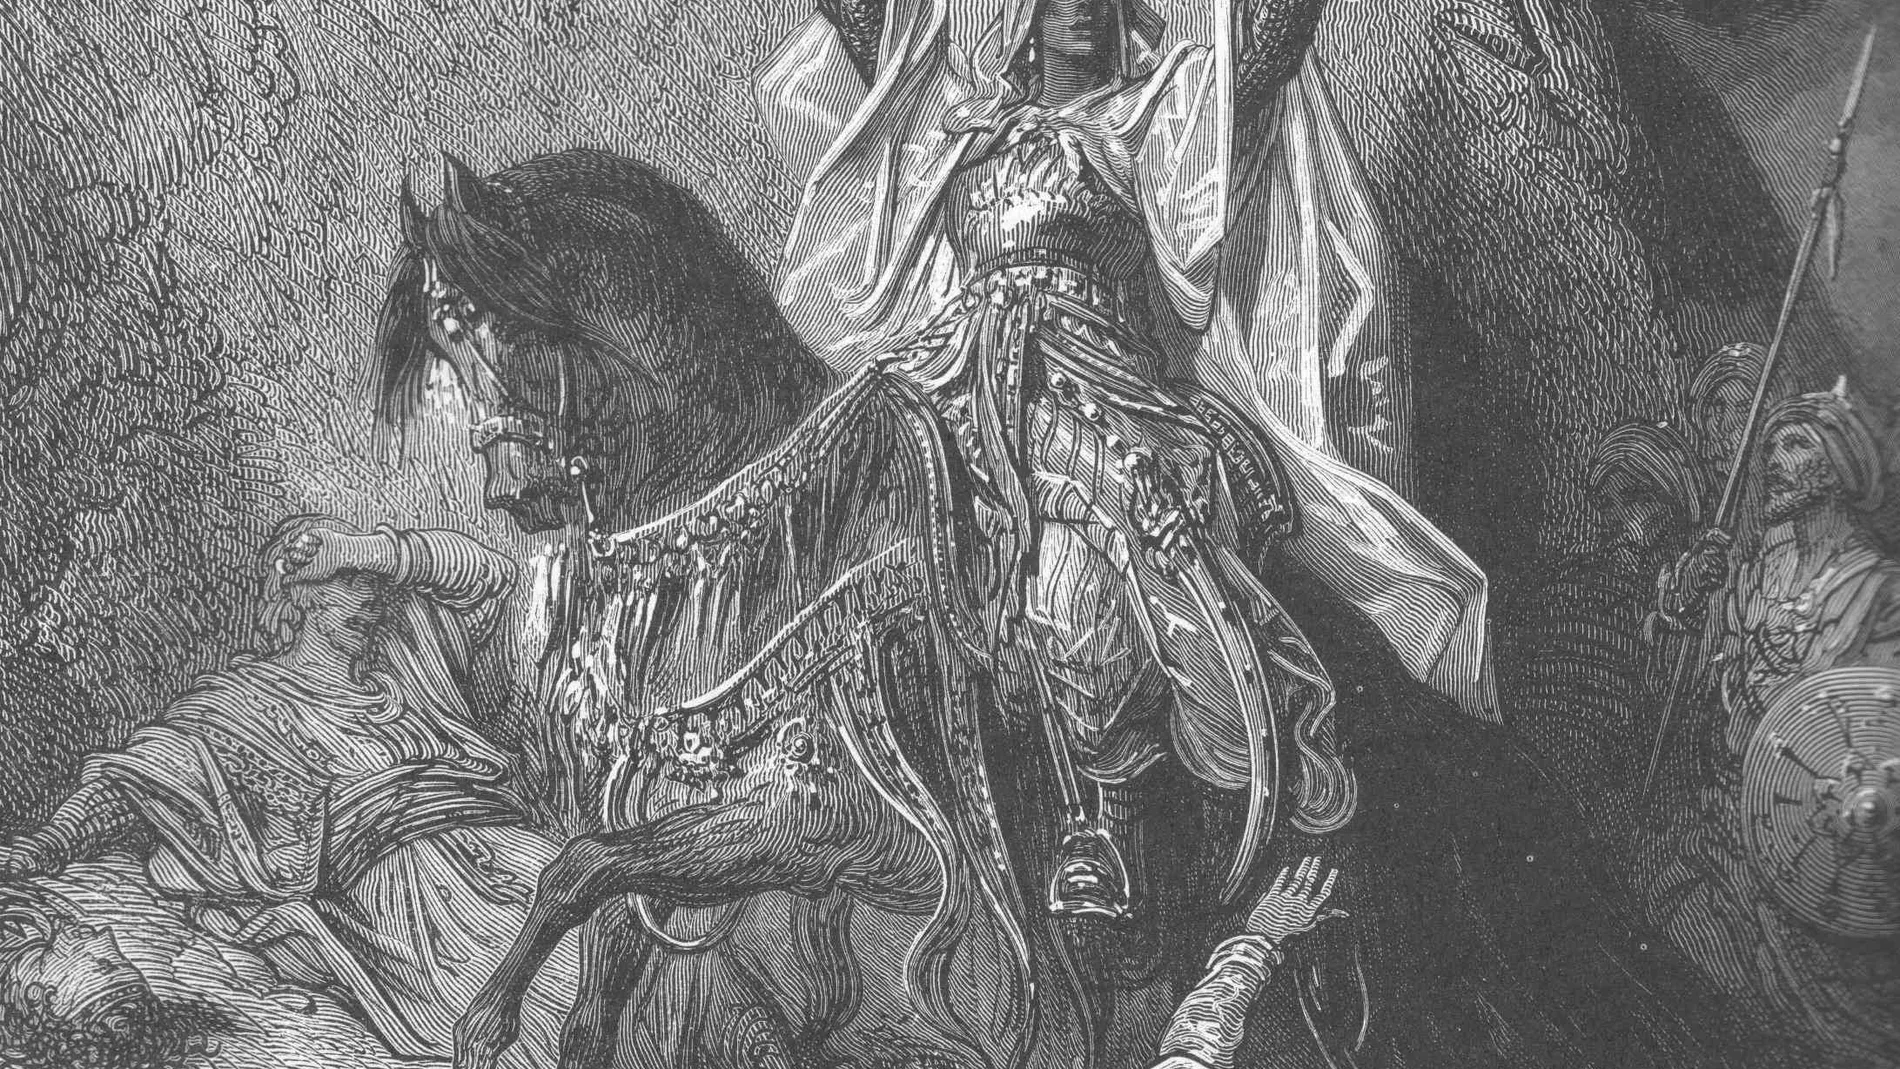 Representación de Gustavo Doré de Saladino victorioso